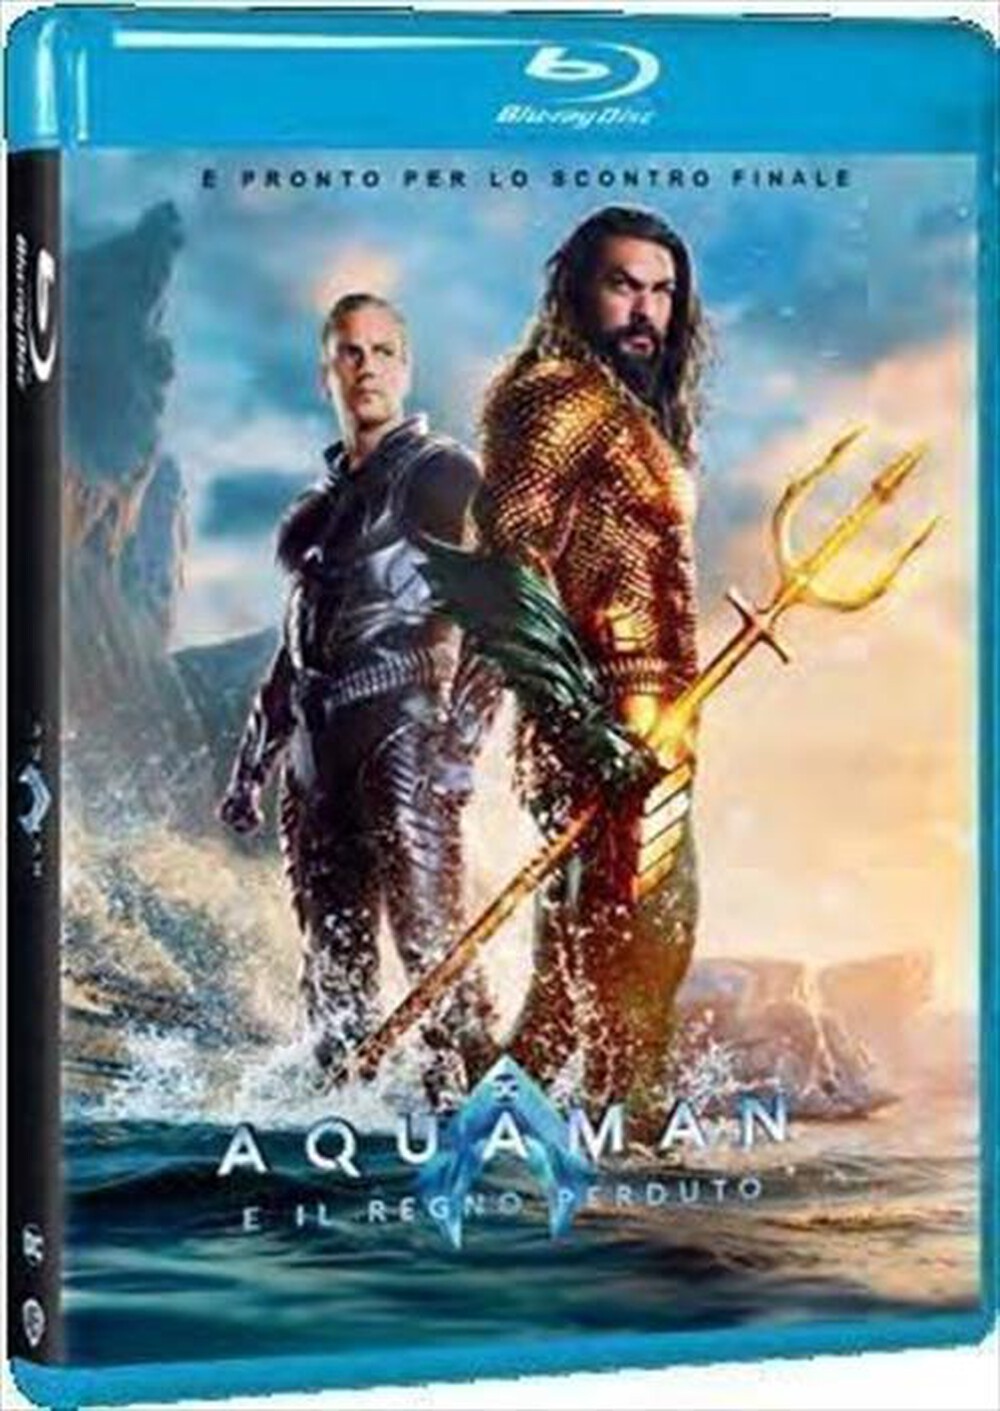 "WARNER HOME VIDEO - Aquaman E Il Regno Perduto"